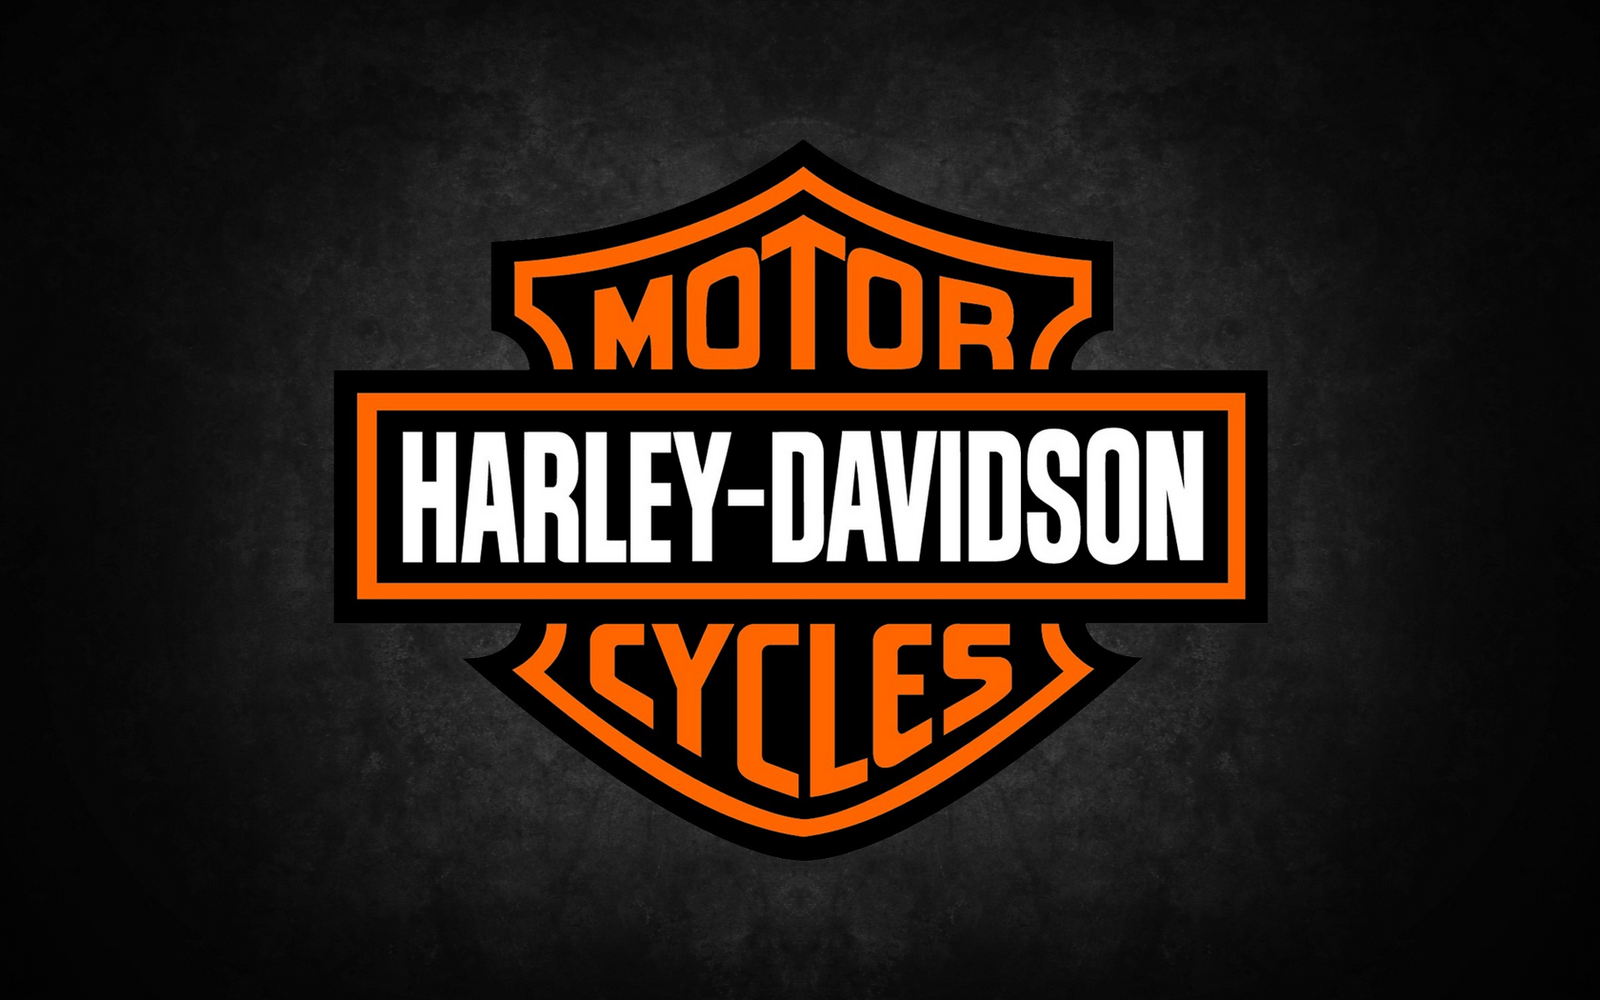 Harley Davidson of Savannah